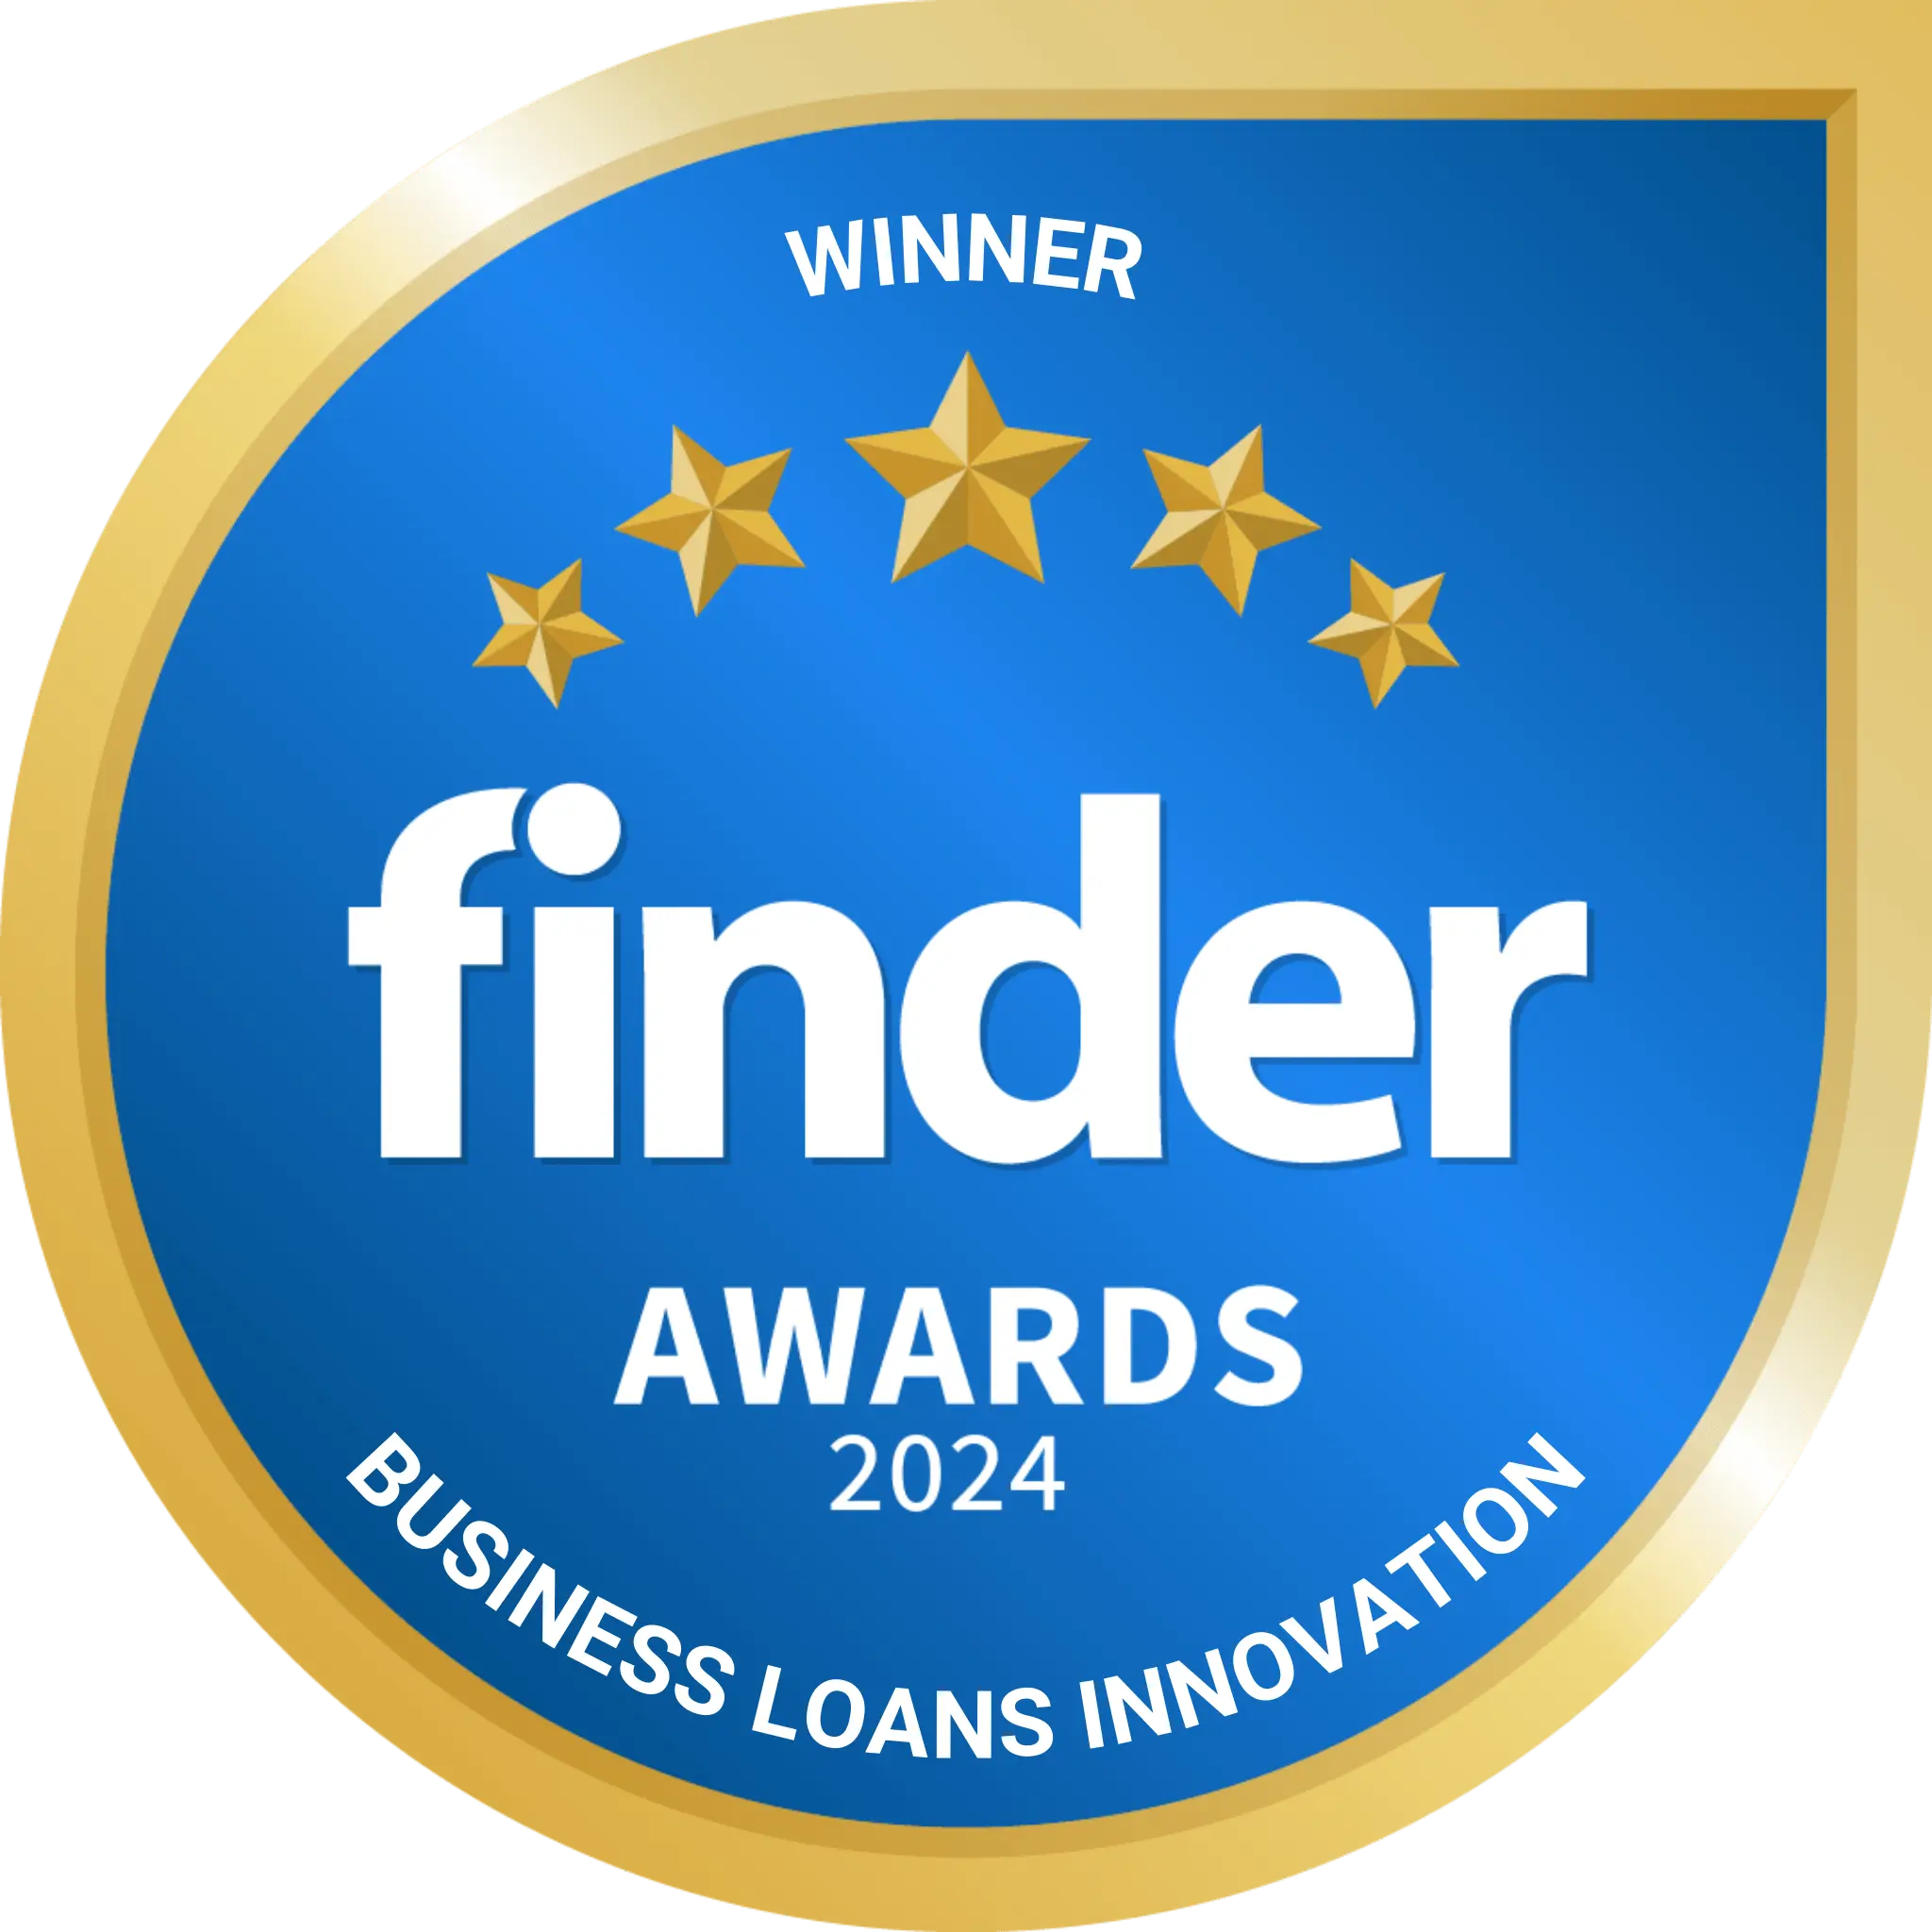 Winner Business Loans Innovation